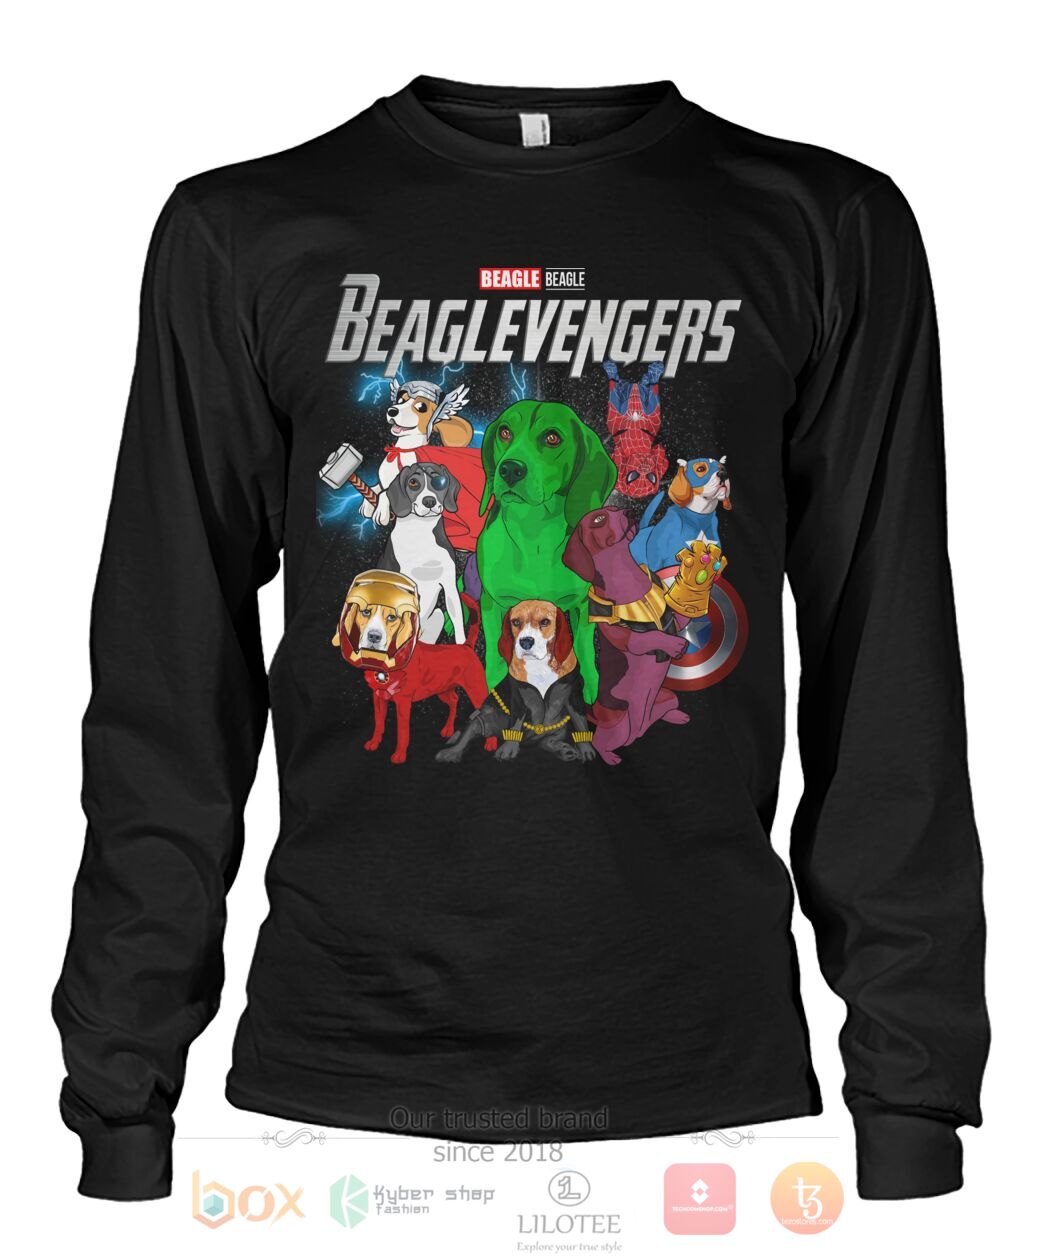 Beaglevengers 3D Hoodie Shirt